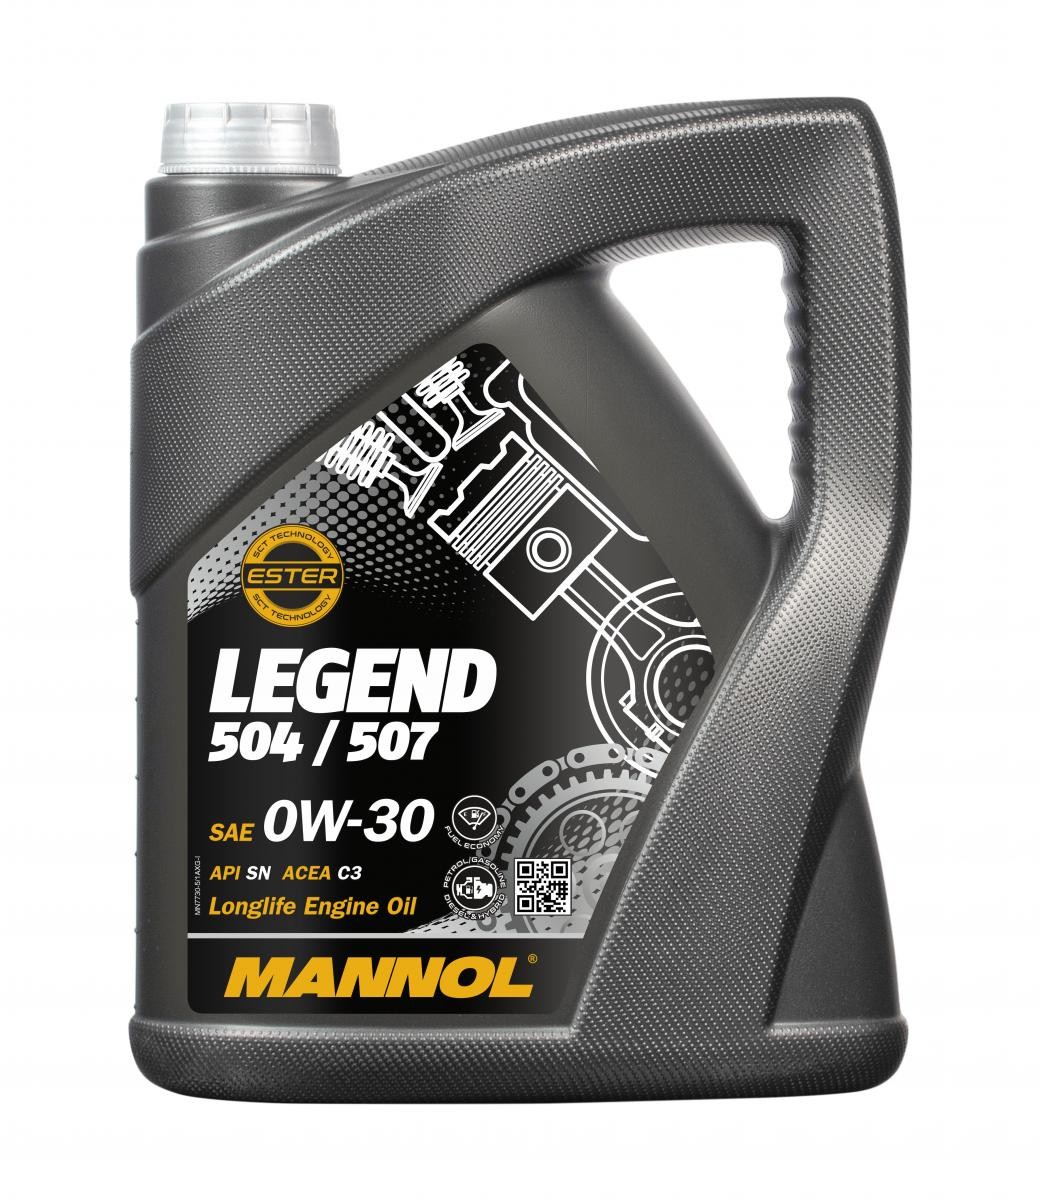 MANNOL Legend 504/507 5 Liter